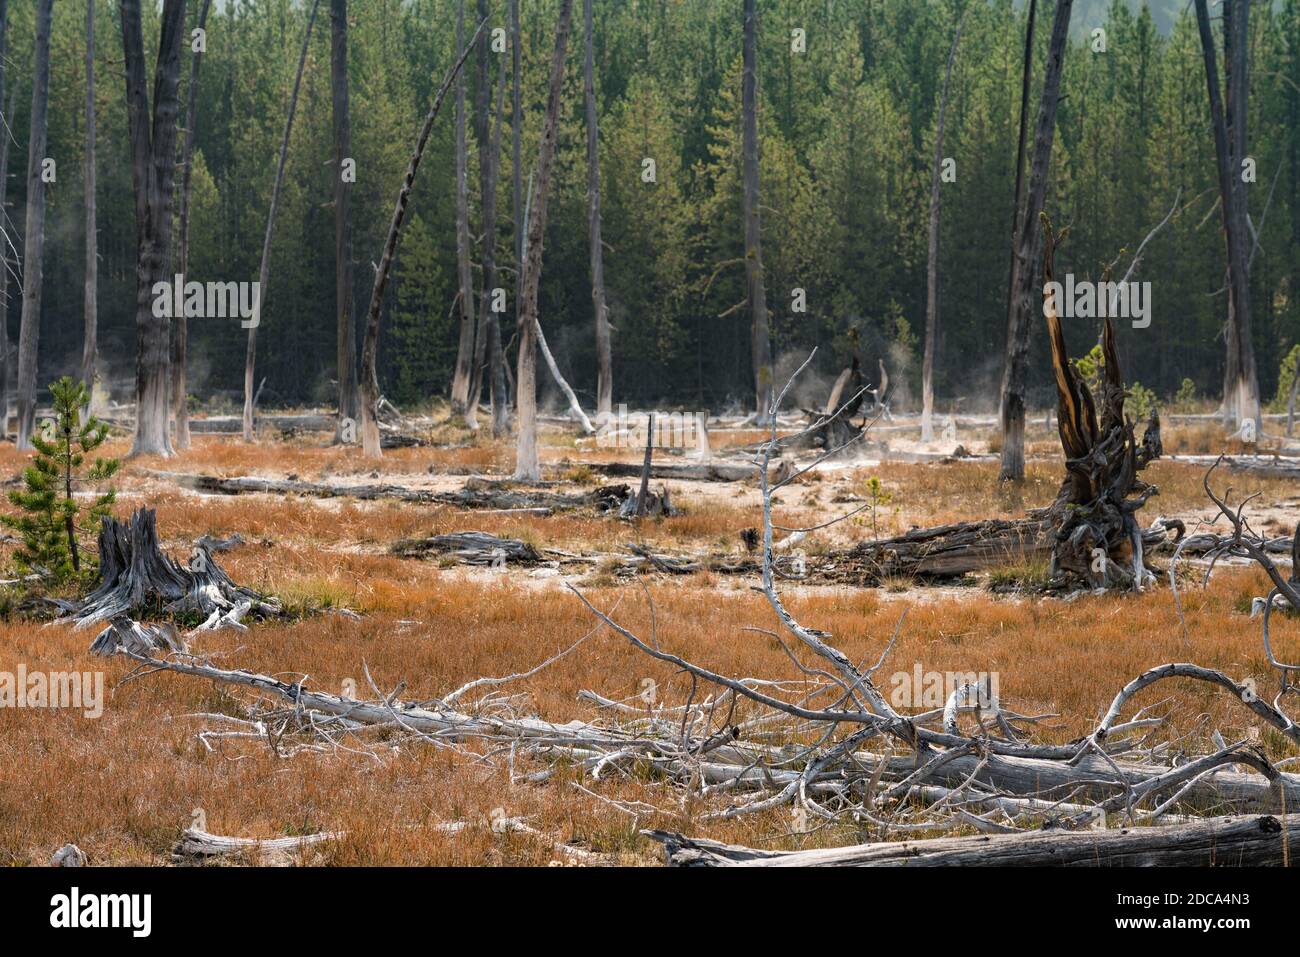 Les arbres Bobby Sox sont tués par des dépôts de silice provenant de sources chaudes près des artistes Painpots. Parc national de Yellowstone, Wyoming, États-Unis. Banque D'Images